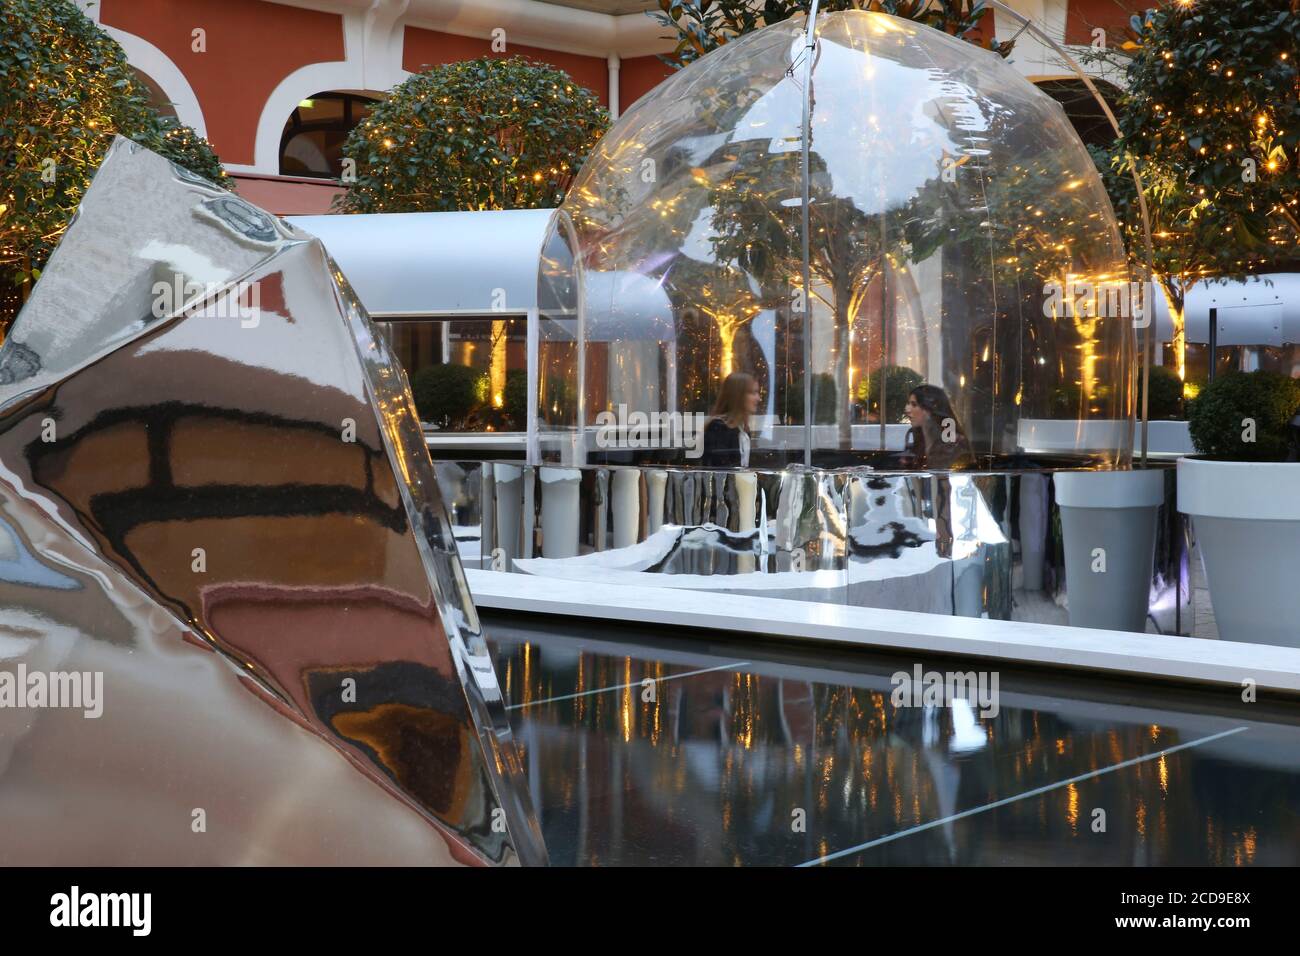 Francia, París, Royal Monceau hotel, efímero diseño de hielo flotan en la terraza del Royal Monceau Foto de stock